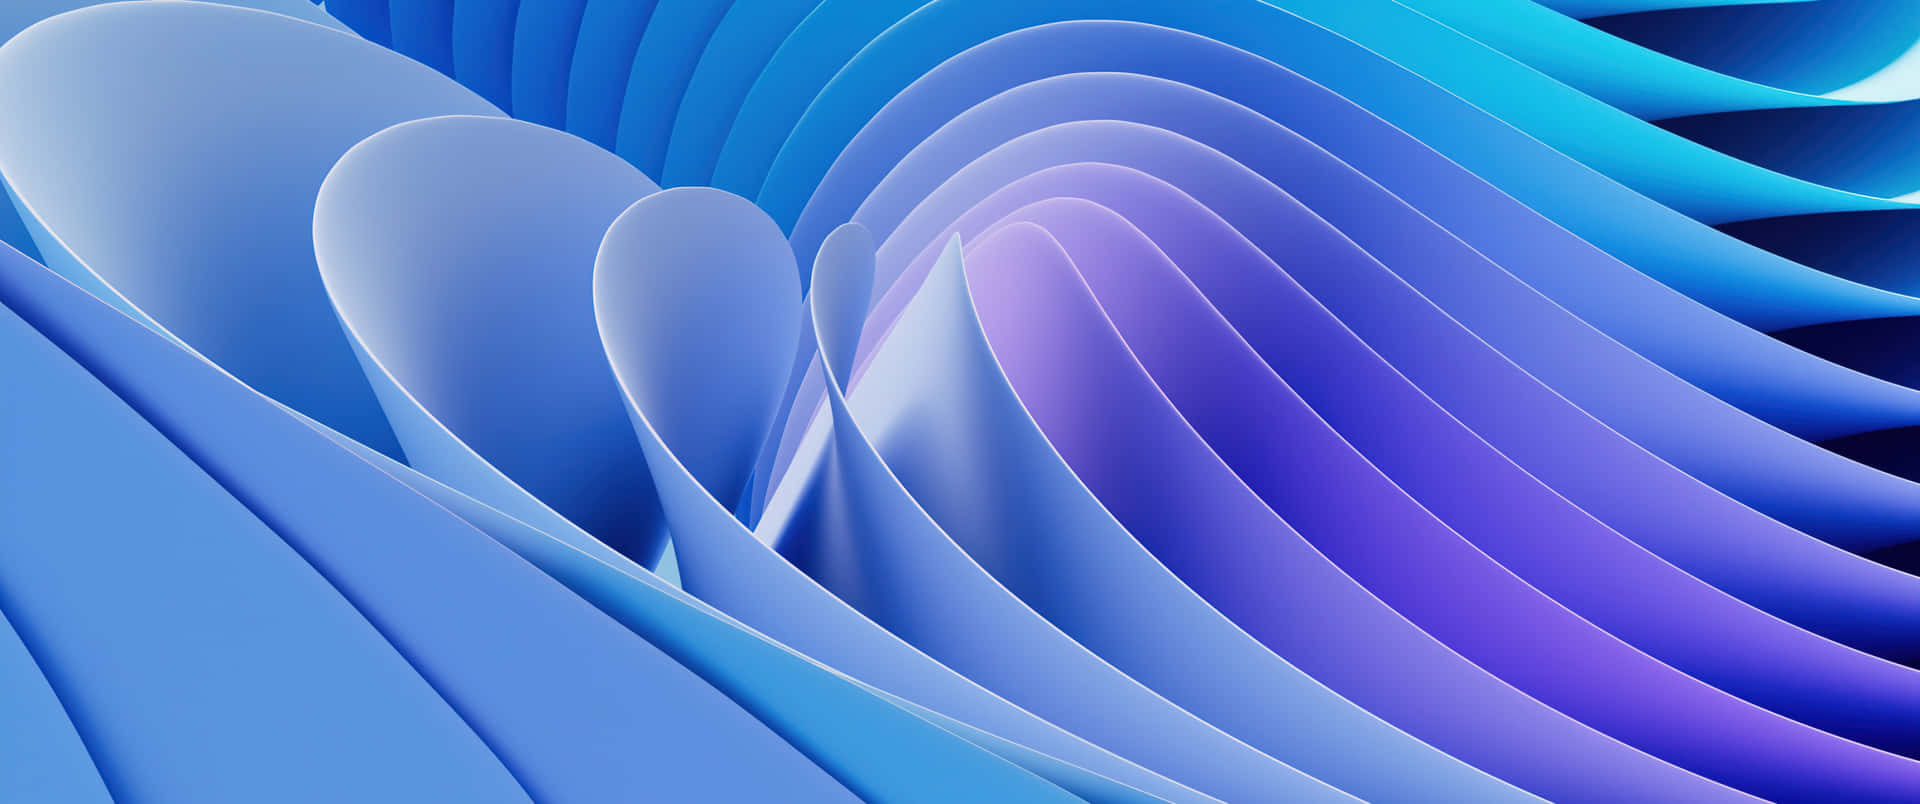 Einblaues Und Violettes Abstraktes Hintergrundbild Mit Einem Wellenmuster. Wallpaper